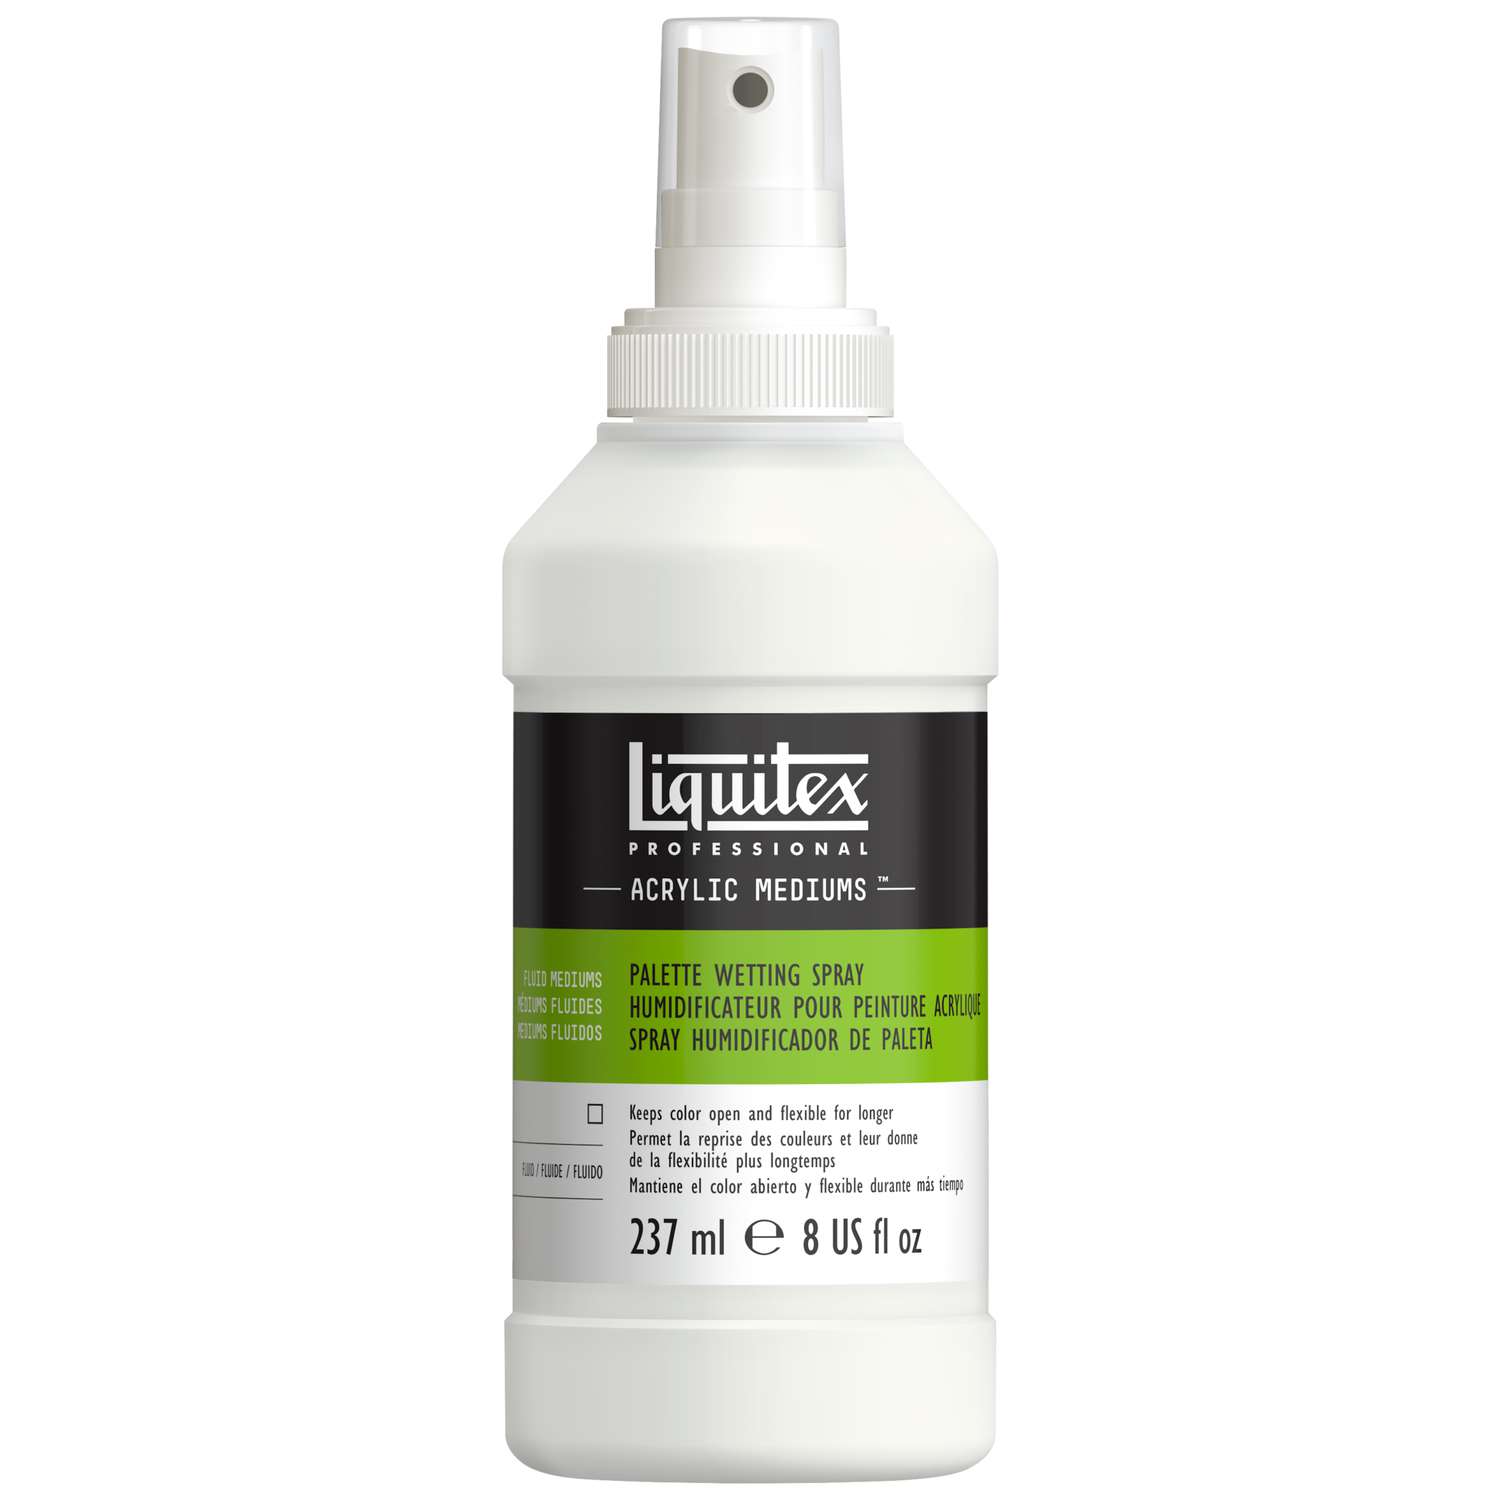 Liquitex - Palette wetting spray, Umidificatore per pittura acrilica